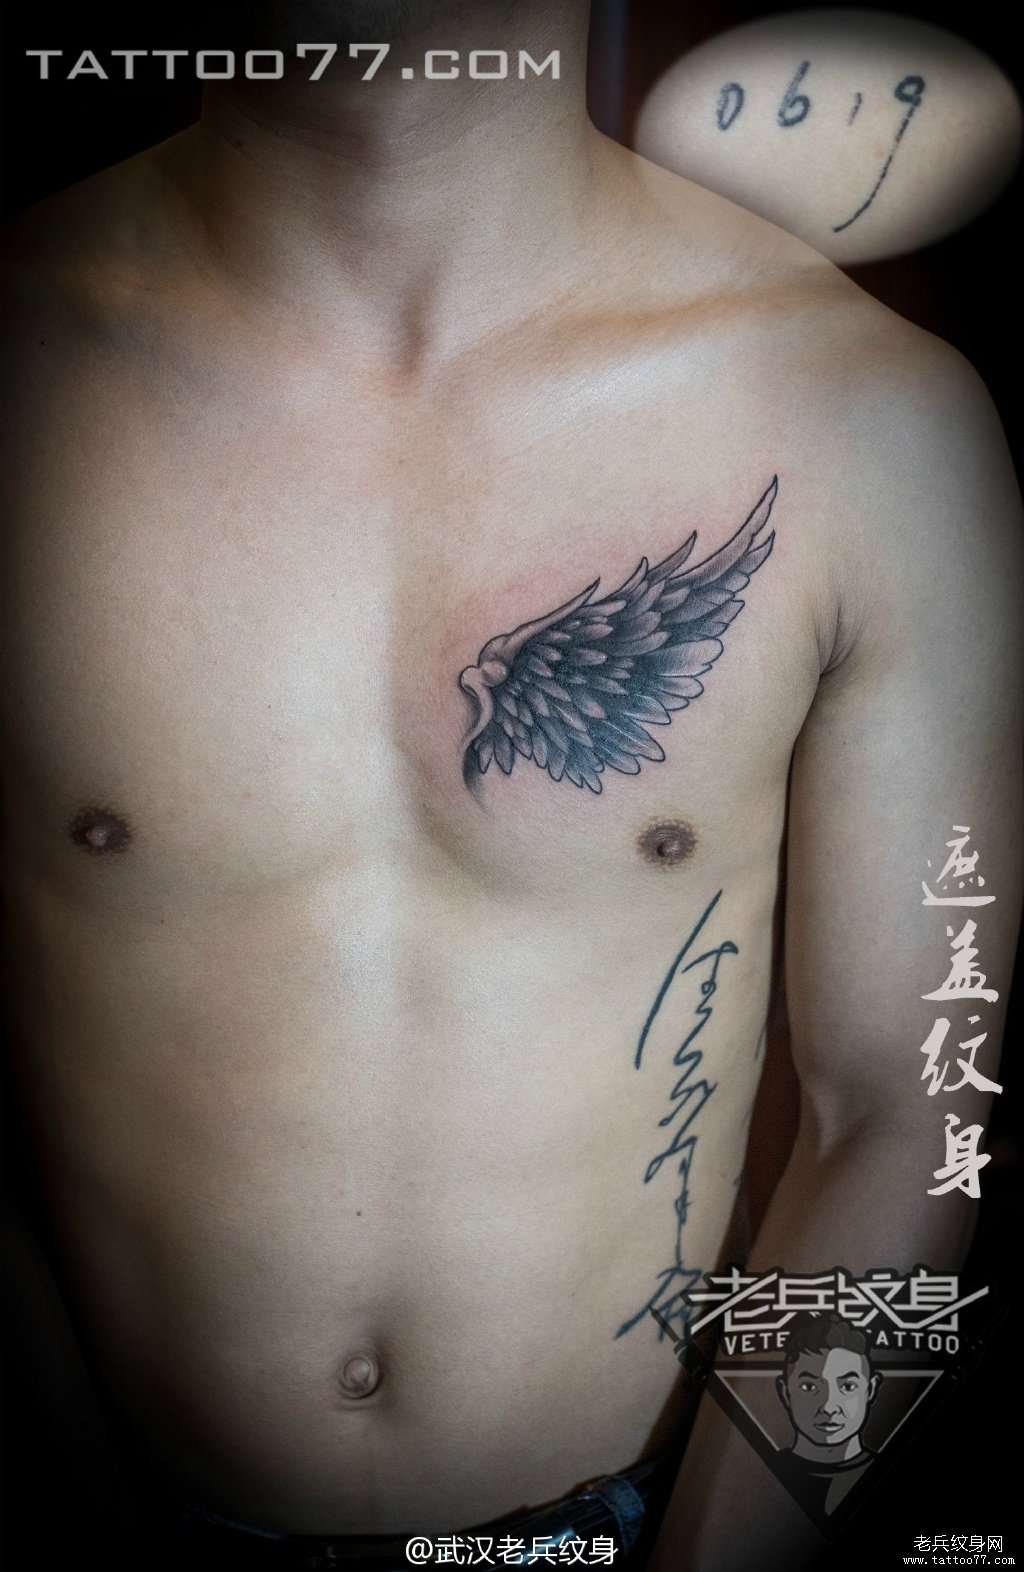 胸部翅膀纹身图案作品遮盖旧纹身